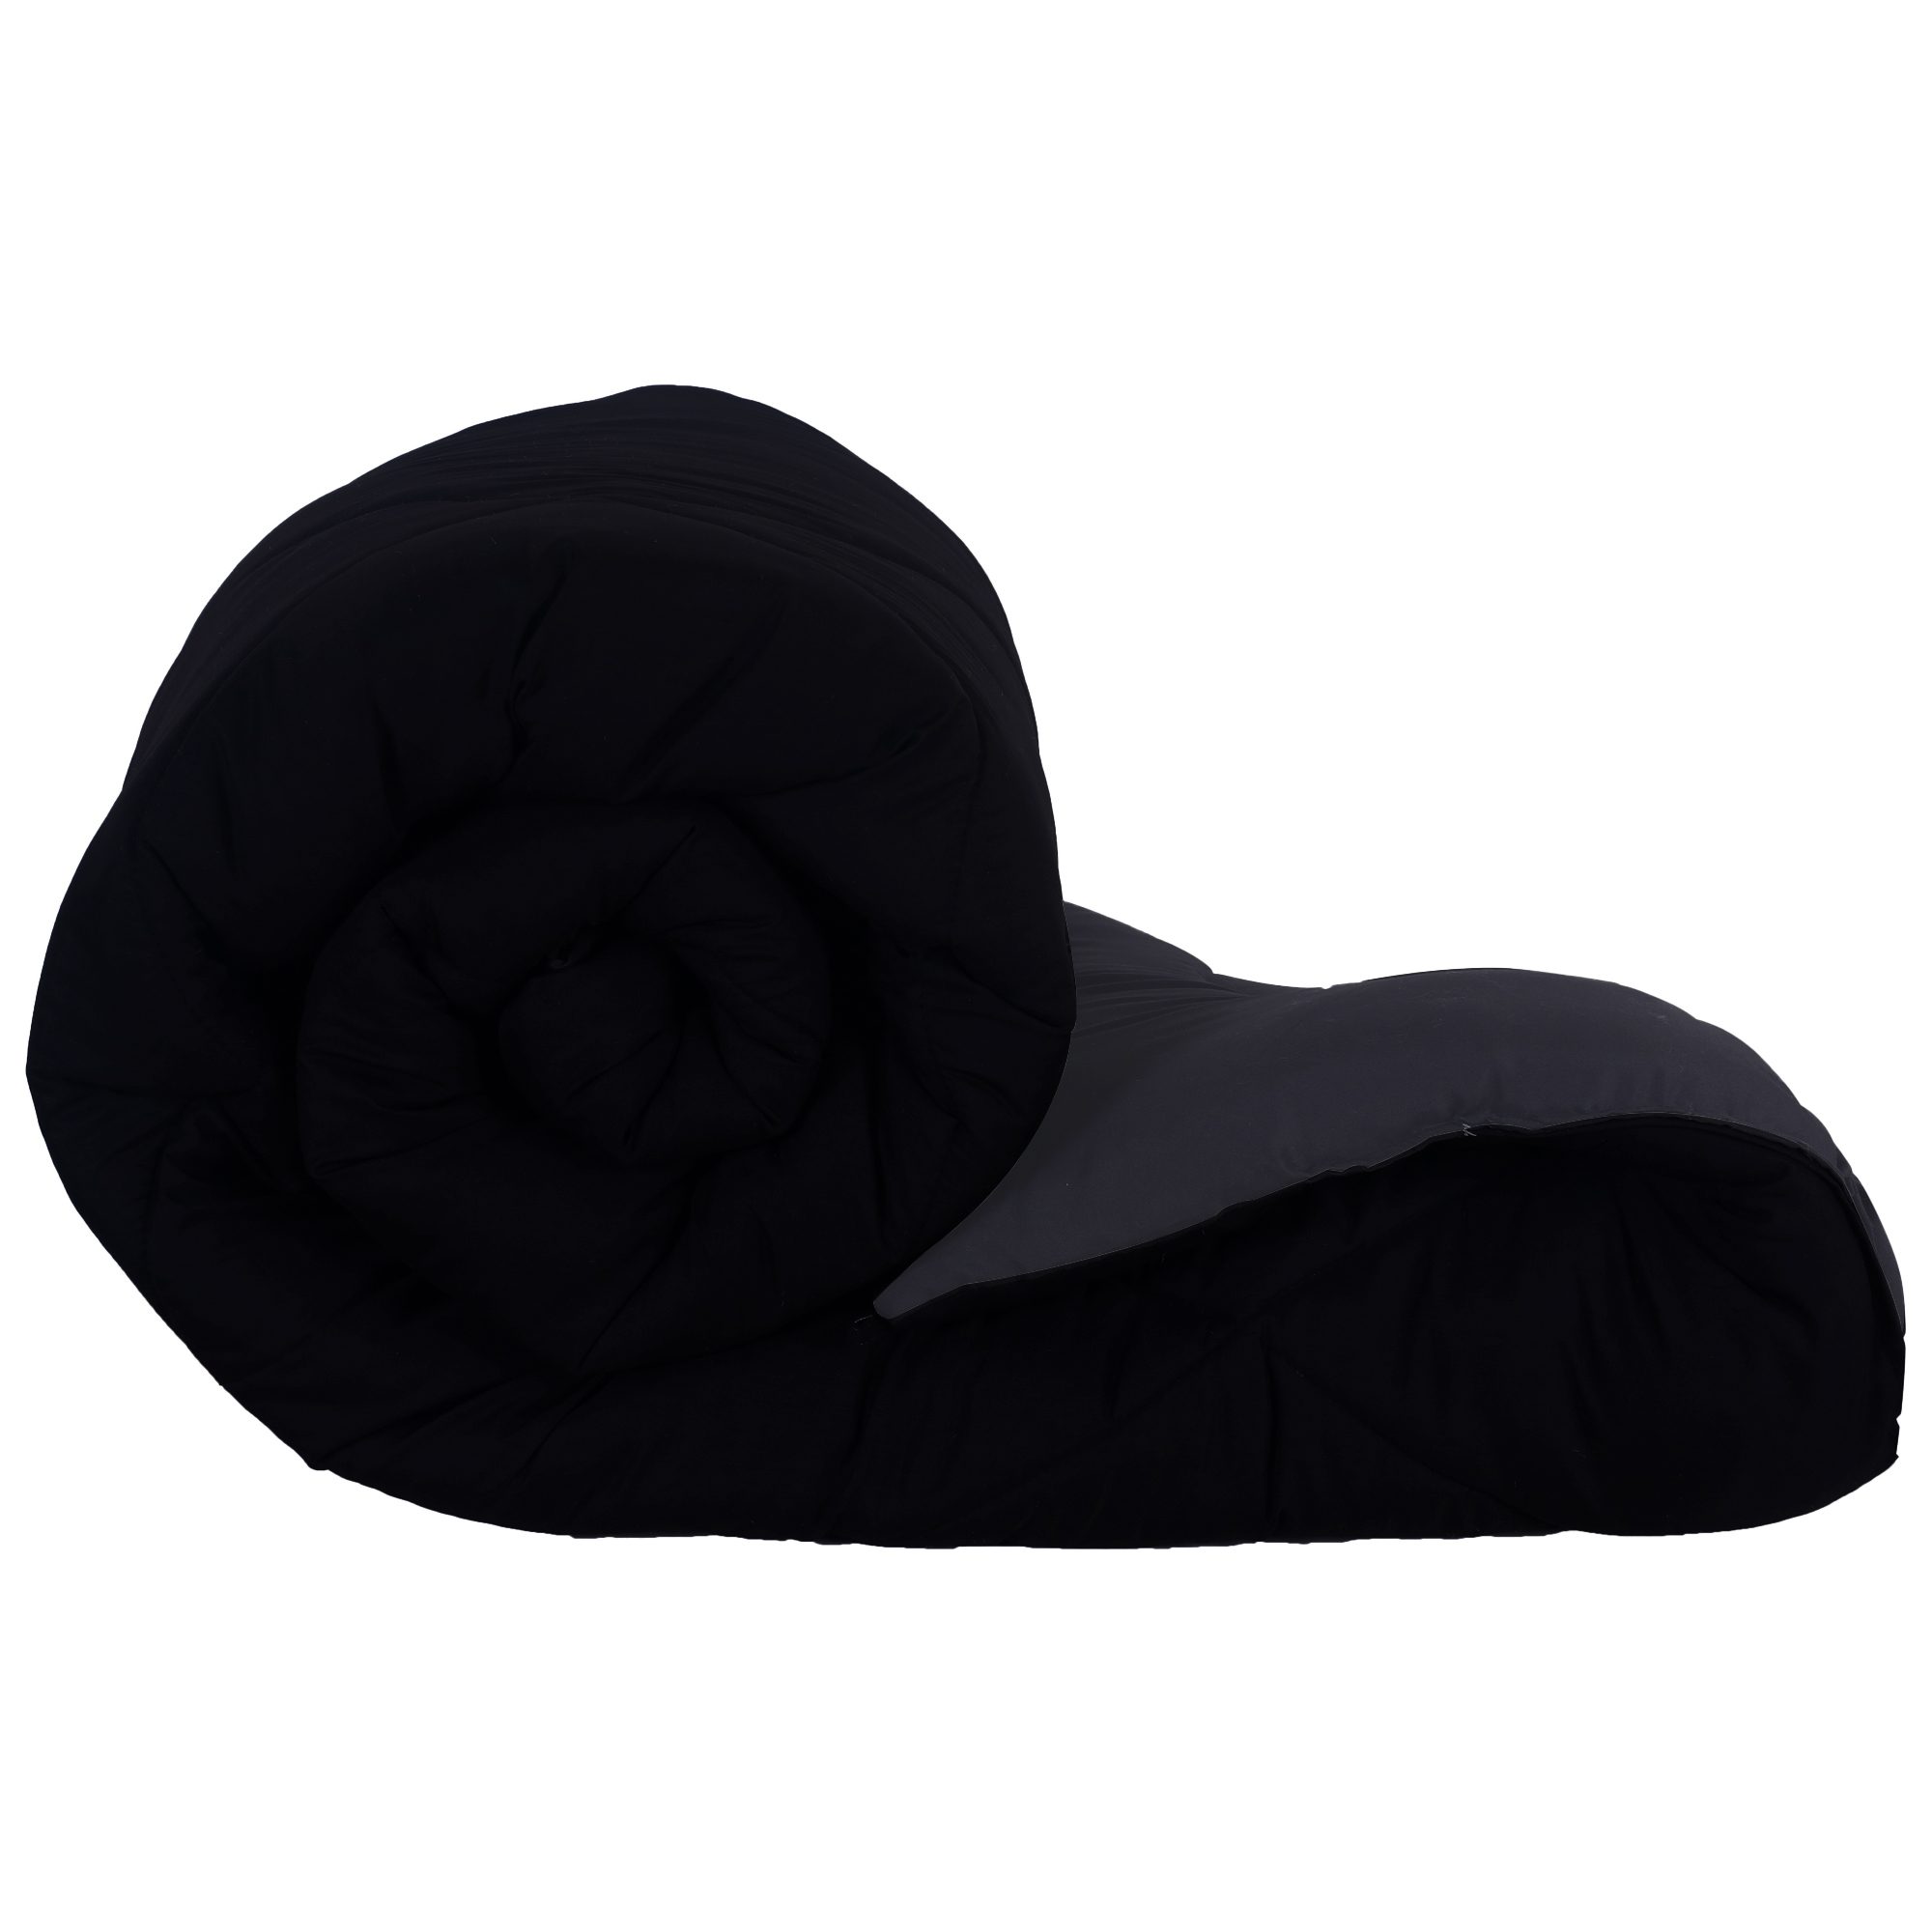 Black Grey  Double Bed Comforter